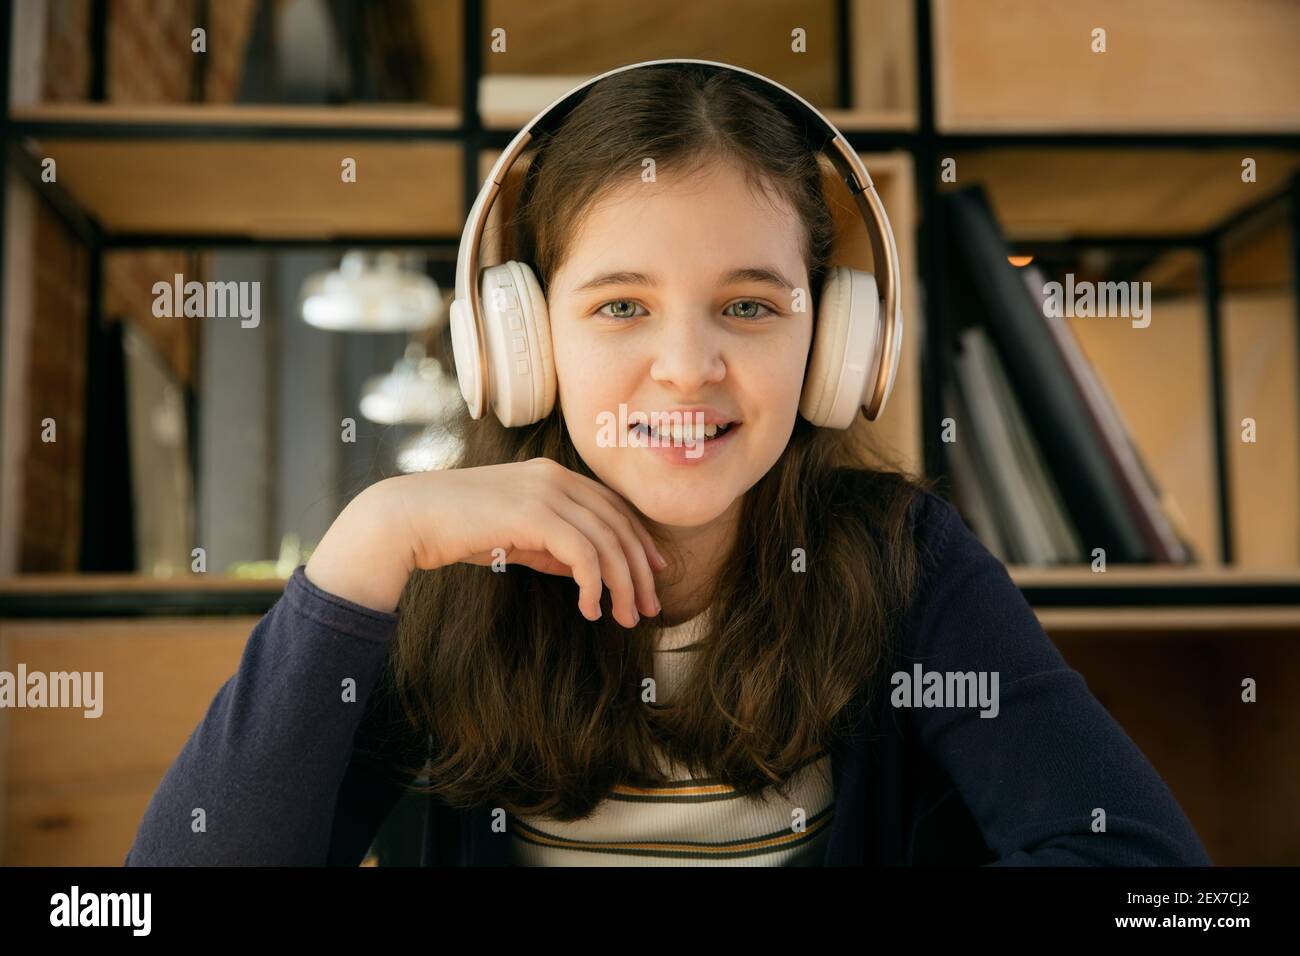 Petite fille portant des écouteurs pendant le cours d'éducation en ligne, leçon, vue de l'écran. Utilisation d'un casque. Concept d'utilisation facile et confortable, éducation, en ligne, enfance, des technologies modernes pour la remotion. Banque D'Images